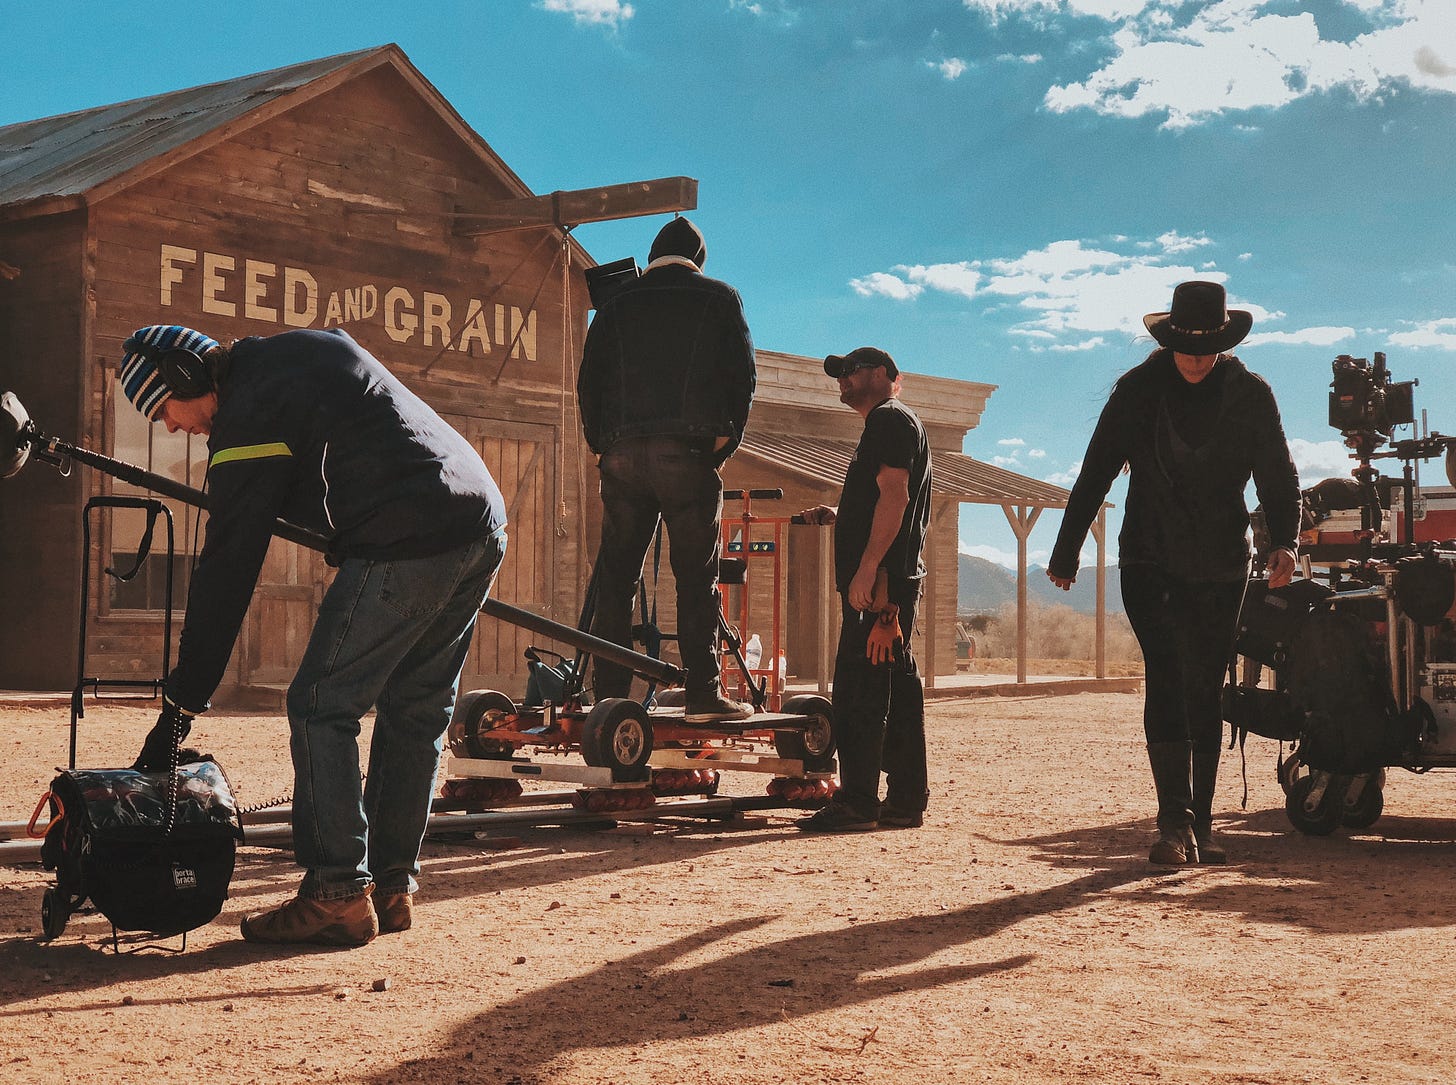 In den Kulissen einer Western-Stadt arbeitet eine Film-Crew mit ihrer Ausrüstung und bereitet eine Szene vor. Im Hintergrund blauer Himmel.